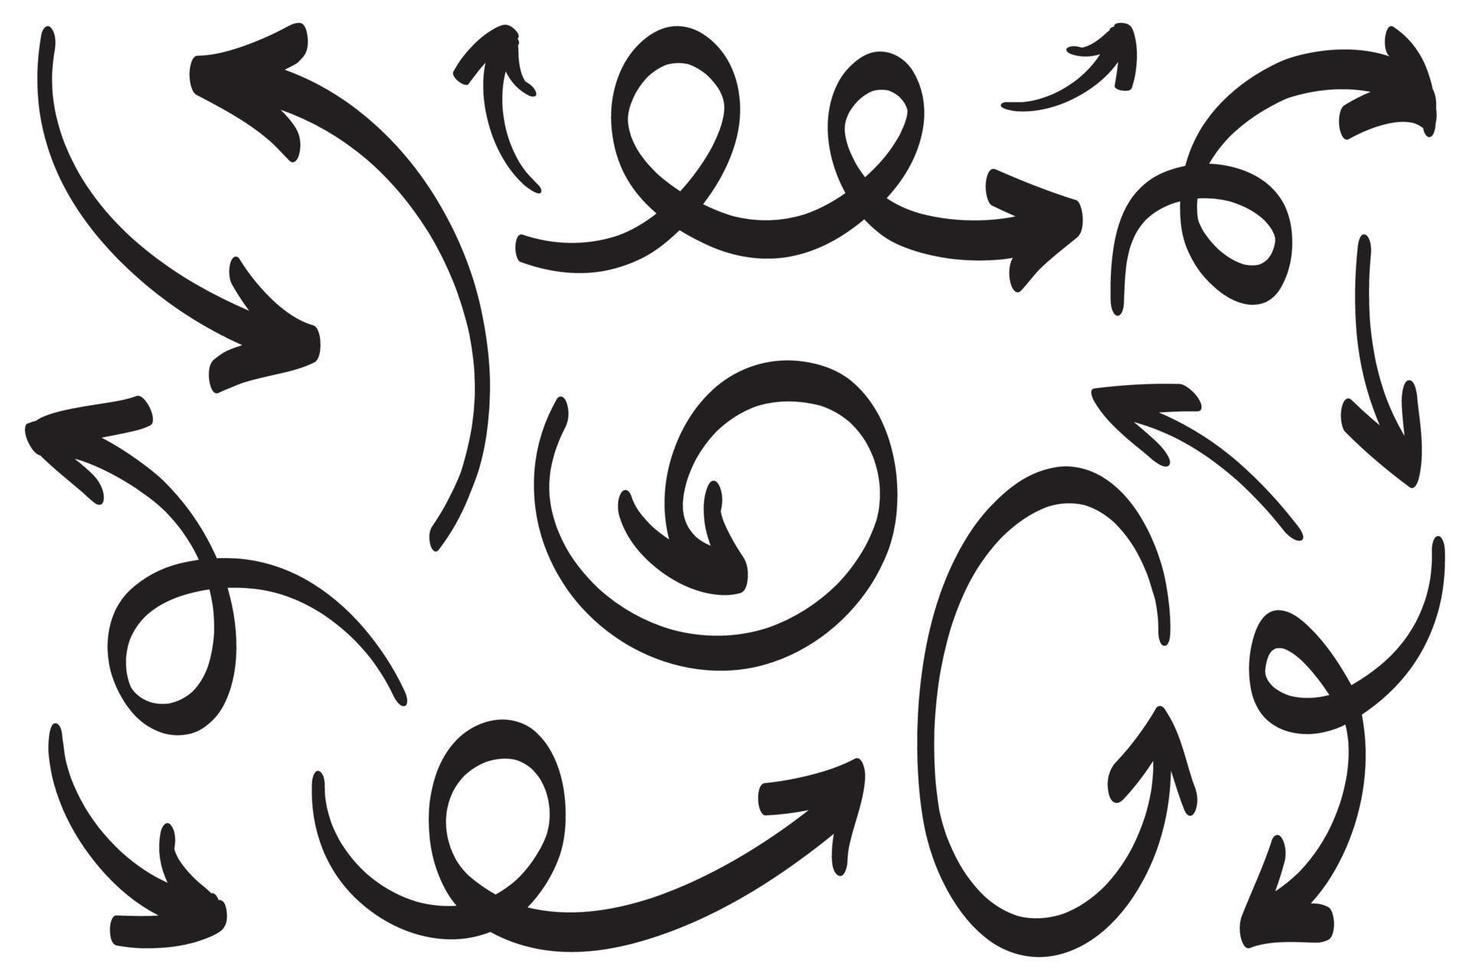 icone della freccia disegnate a mano messe isolate su priorità bassa bianca. illustrazione vettoriale di scarabocchio.